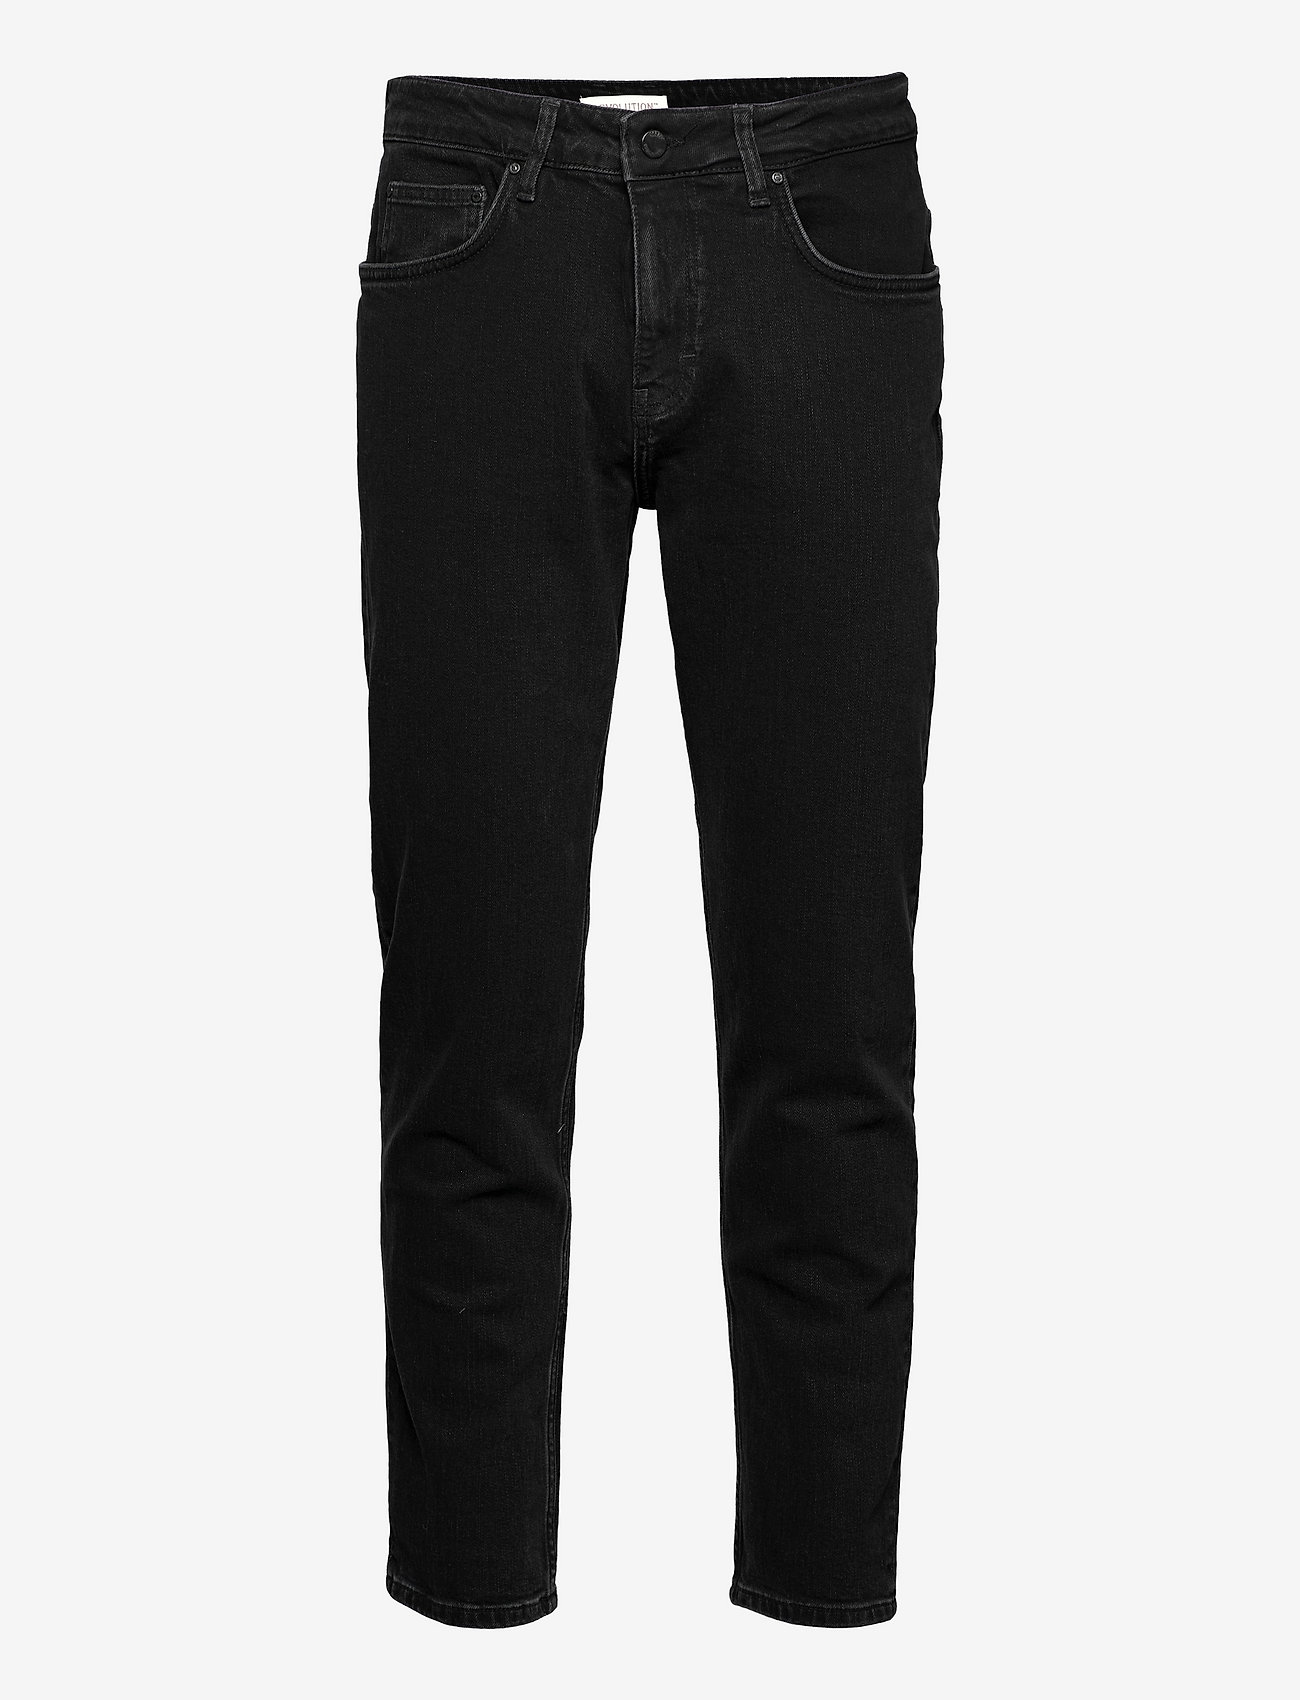 Revolution - Rinsed black loose jeans - laisvo kirpimo džinsai - black - 0